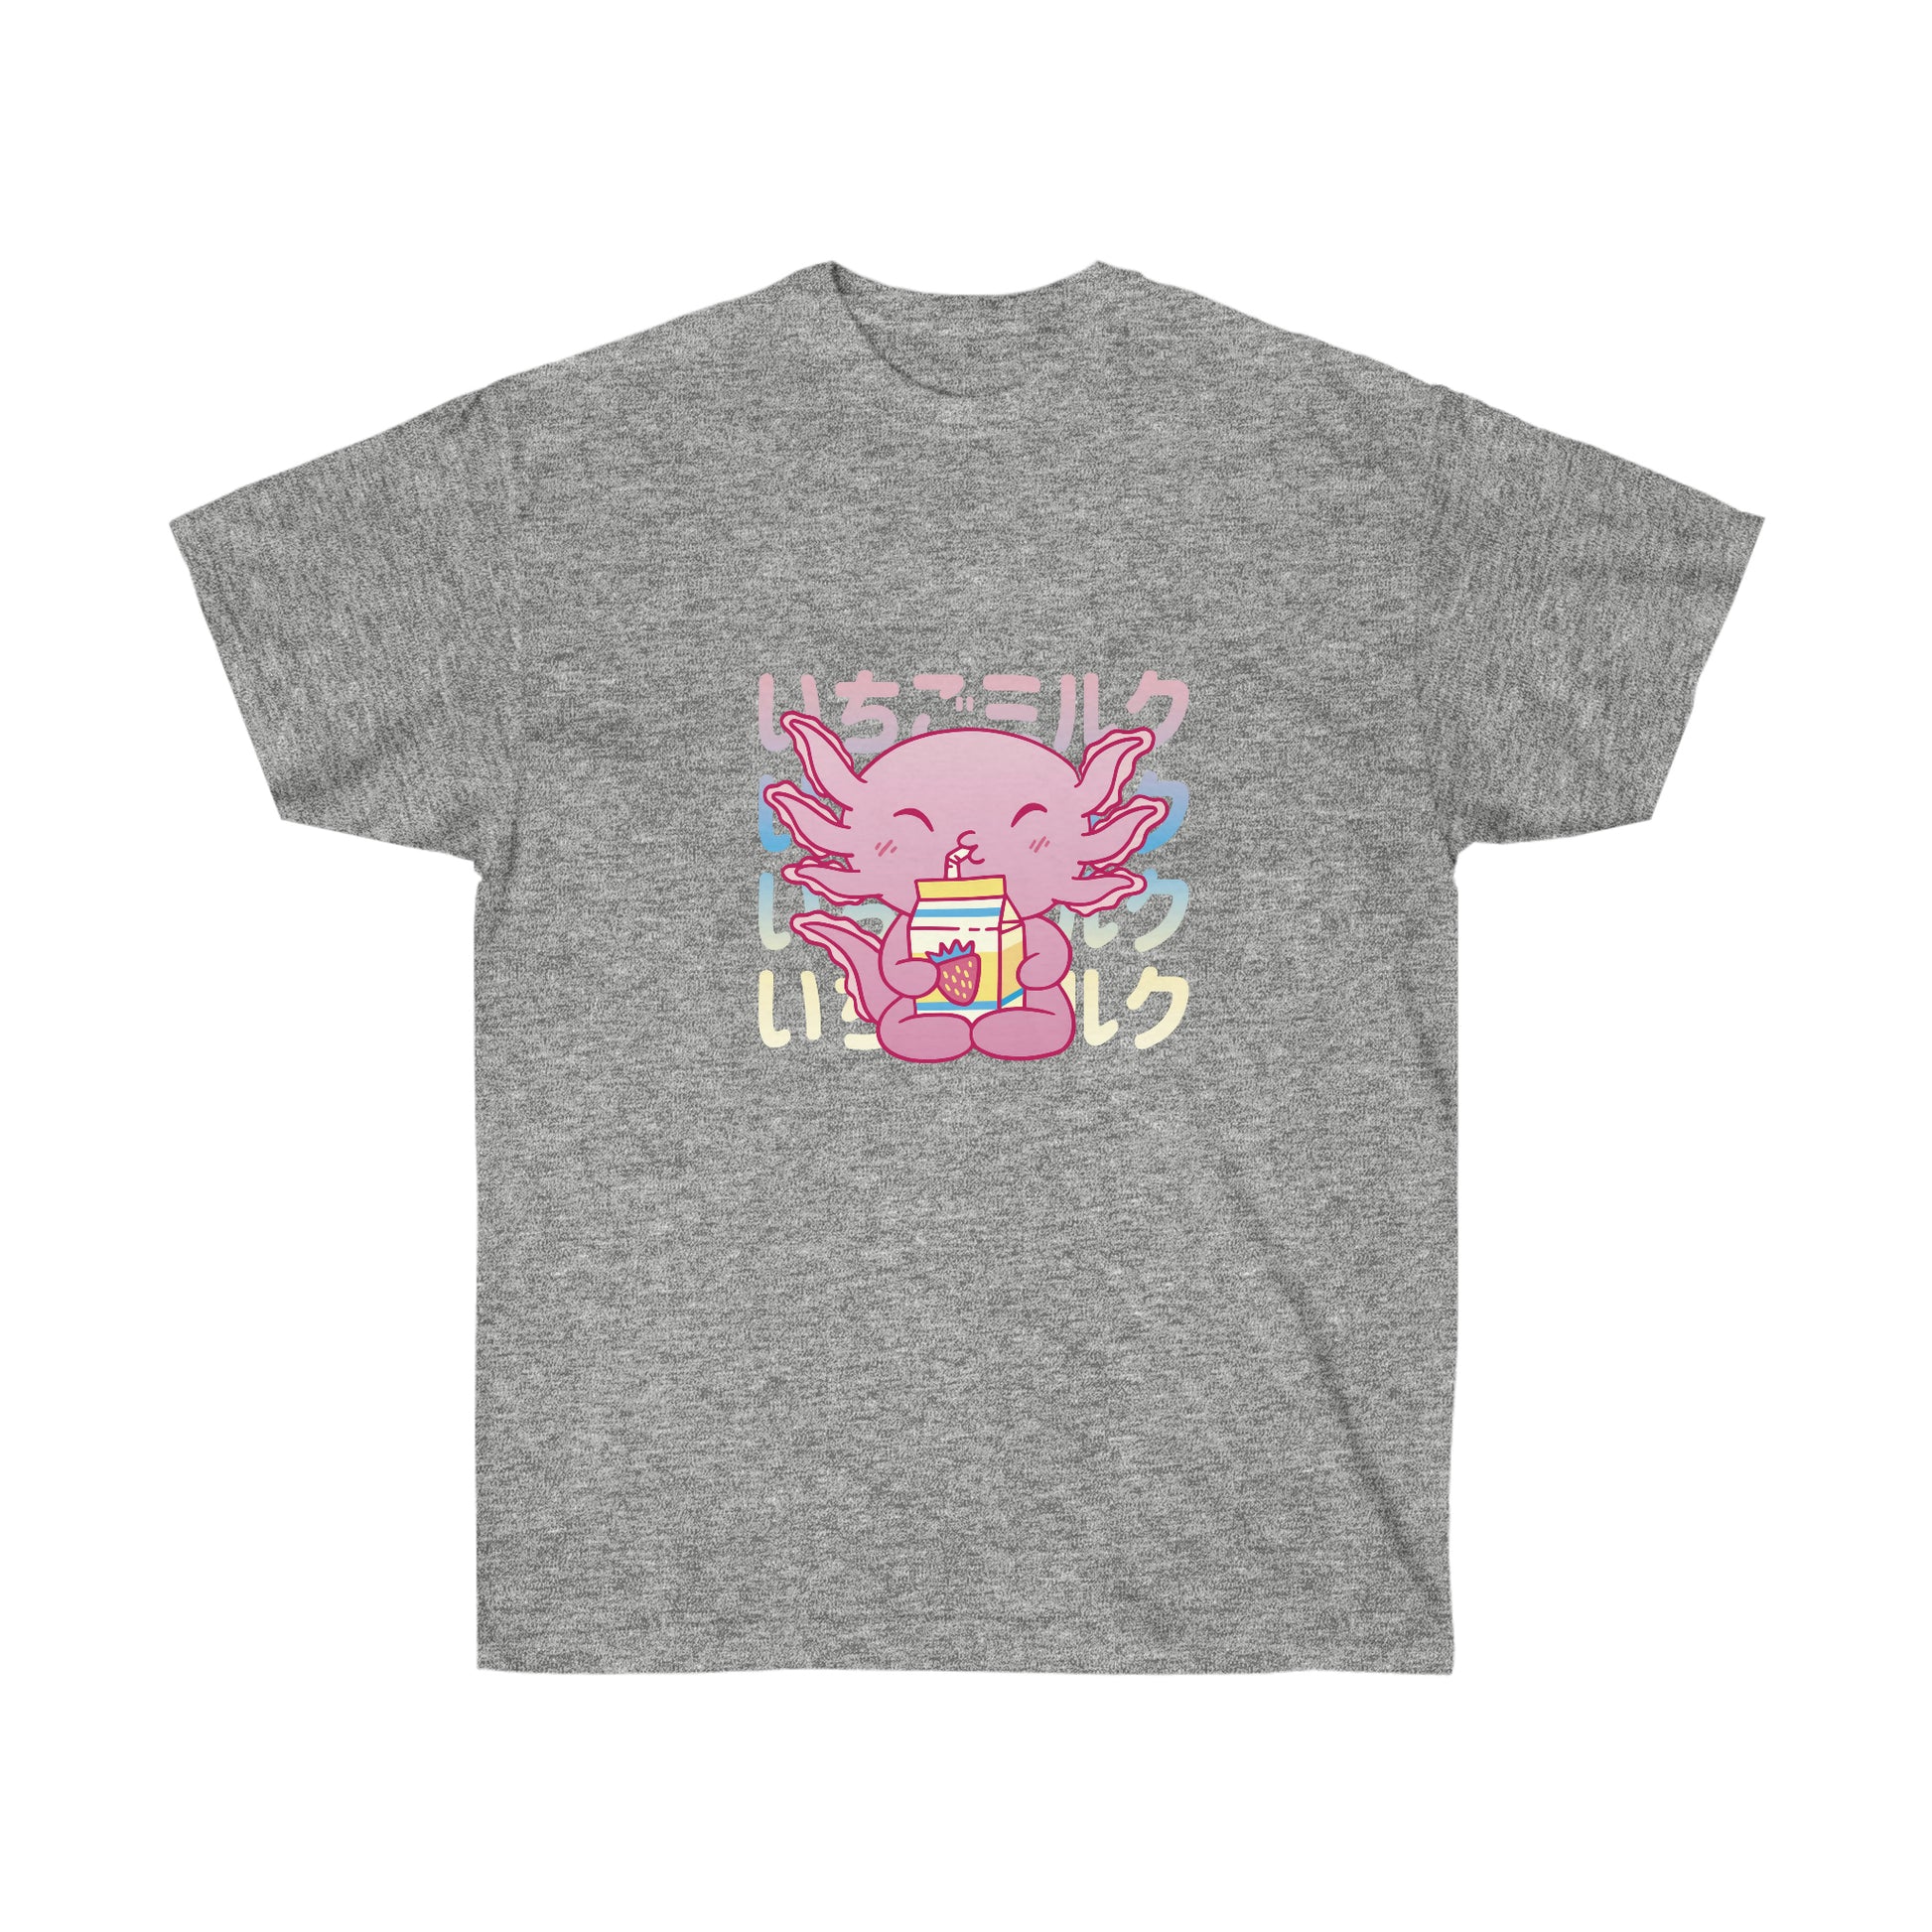 Kawaii Sweatshirt, Kawaii Clothing, Kawaii Clothes, Yami Kawaii, Pastel Kawaii Cute Strawberry Milk Axolotl Sweatshirt T-Shirt